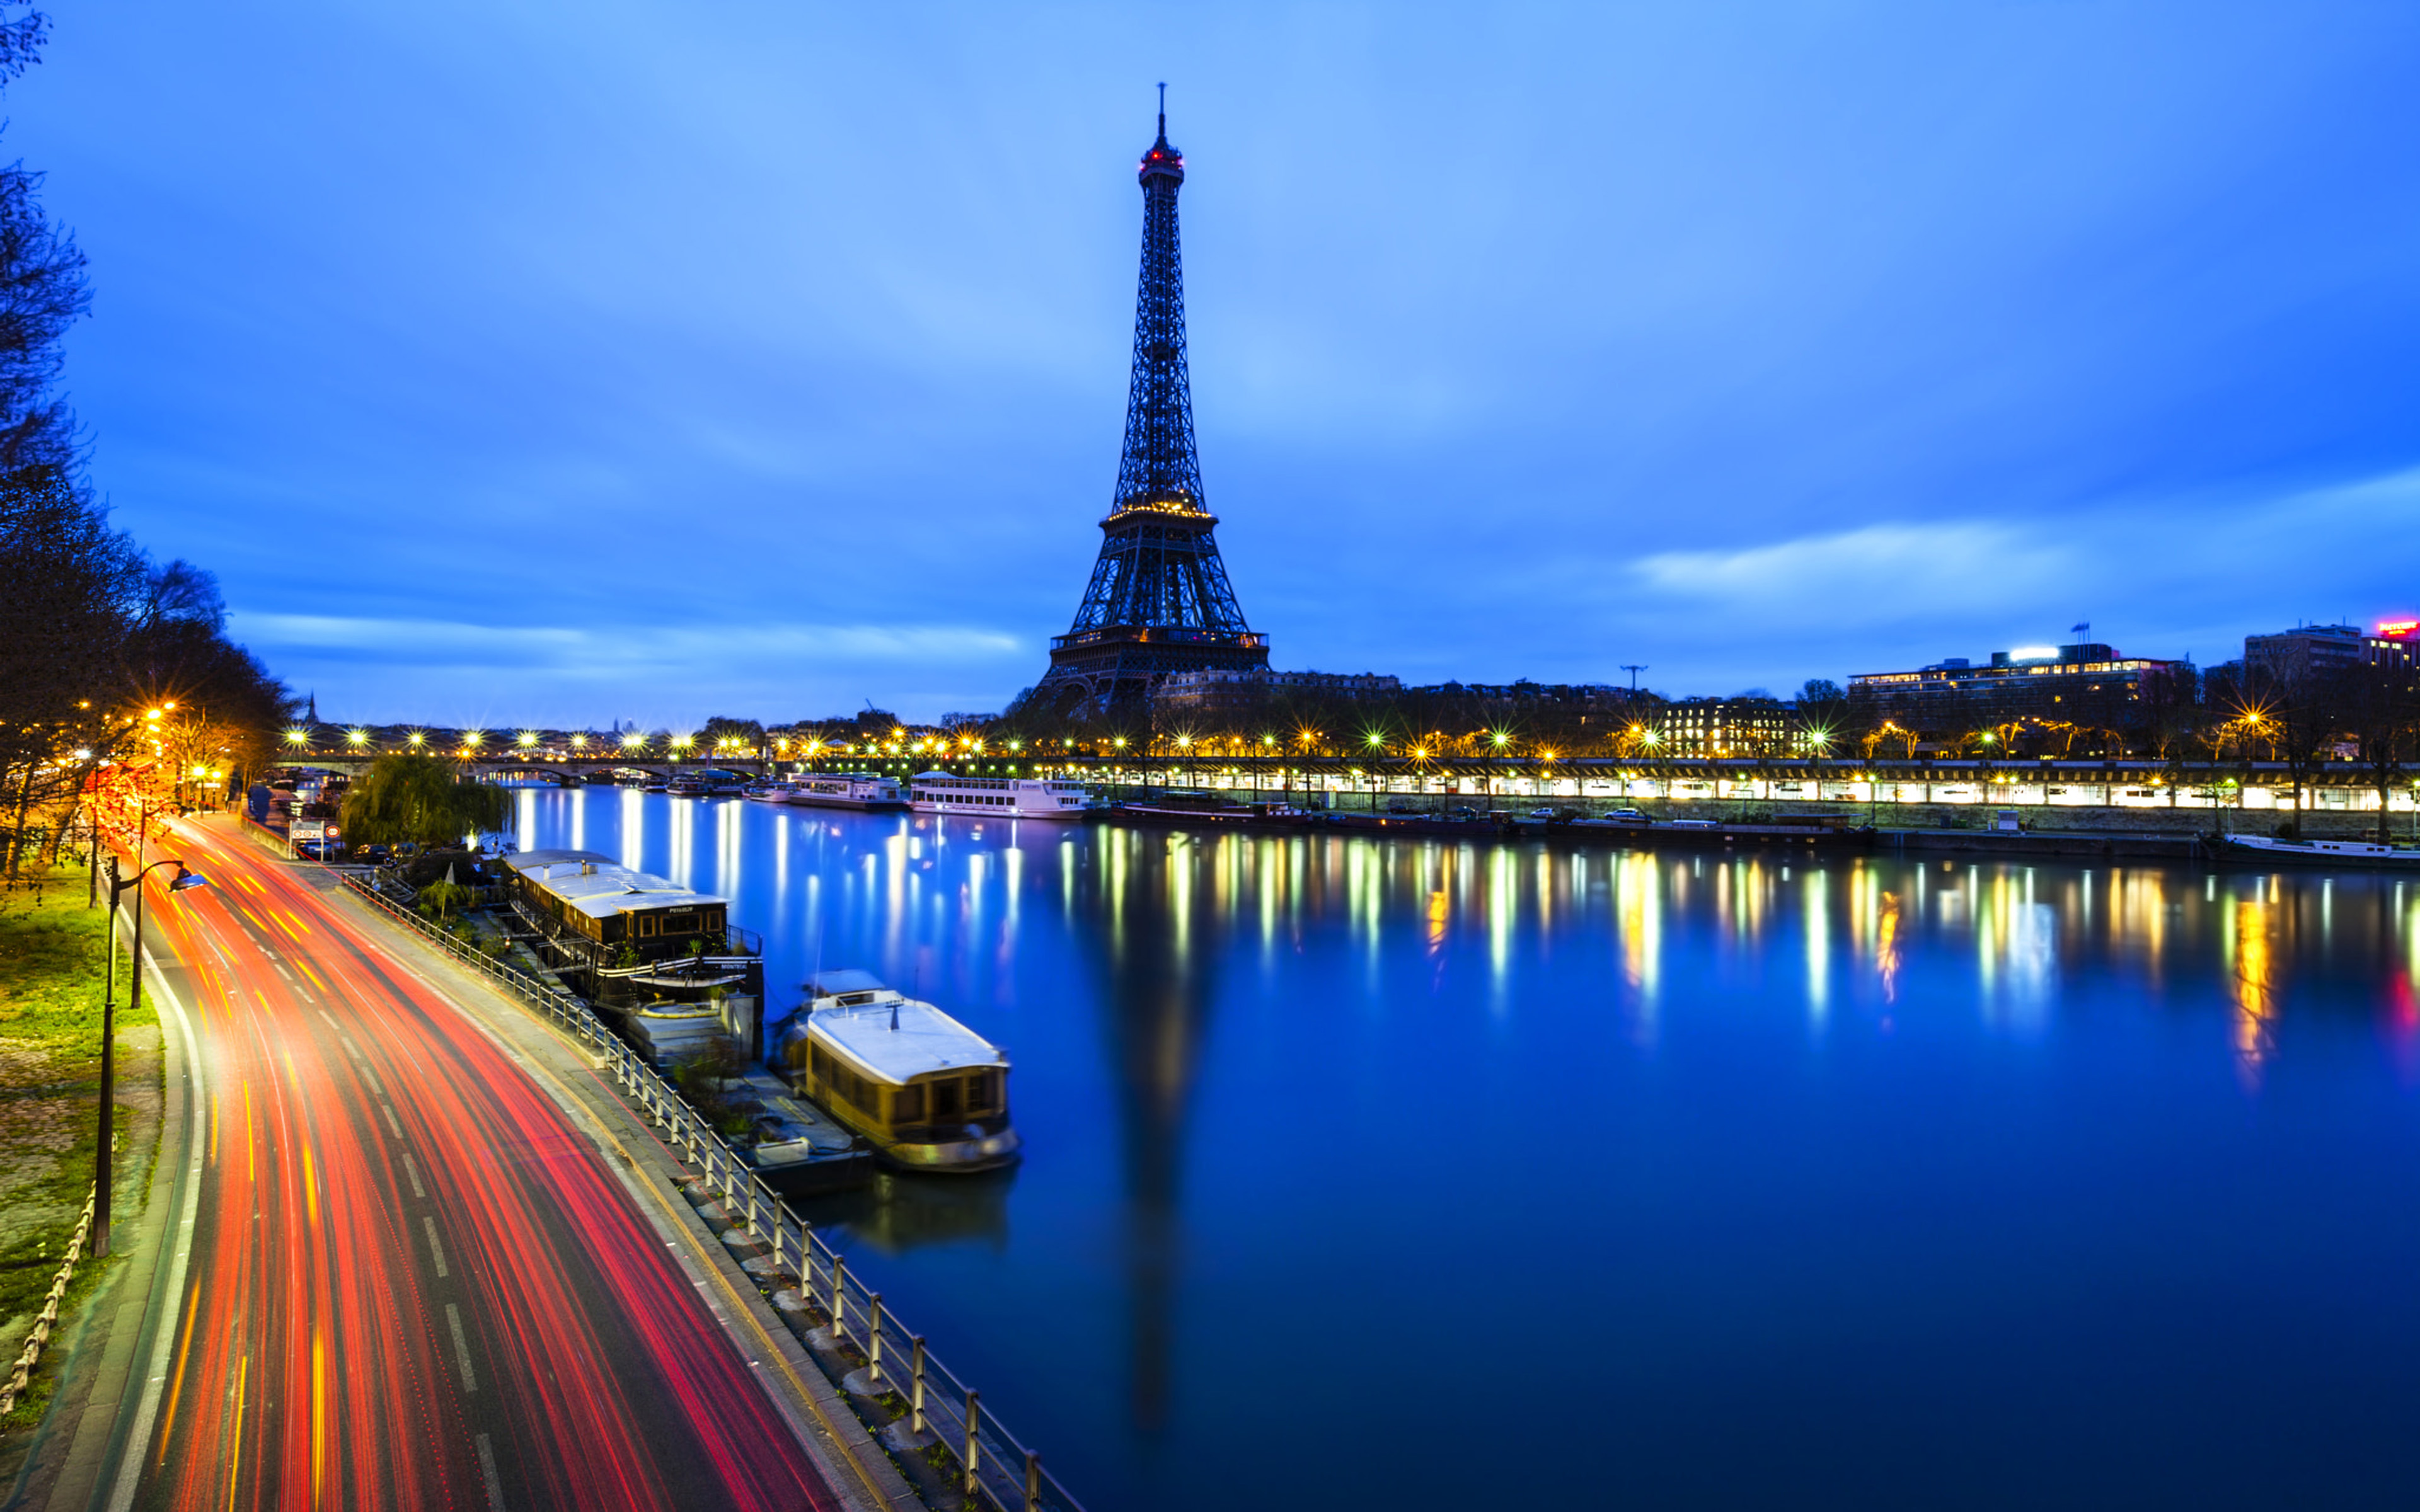 Paris - Thành phố ánh sáng với tòa tháp Eiffel nổi tiếng nhất. Bình minh đầu tiên của một ngày mới tại Paris vô cùng tuyệt vời và đáng nhớ. Hãy ngắm nhìn cảnh đẹp của Paris với sông Seine và tòa tháp Eiffel qua những bức ảnh UHD để trải nghiệm không gian thật tuyệt vời.